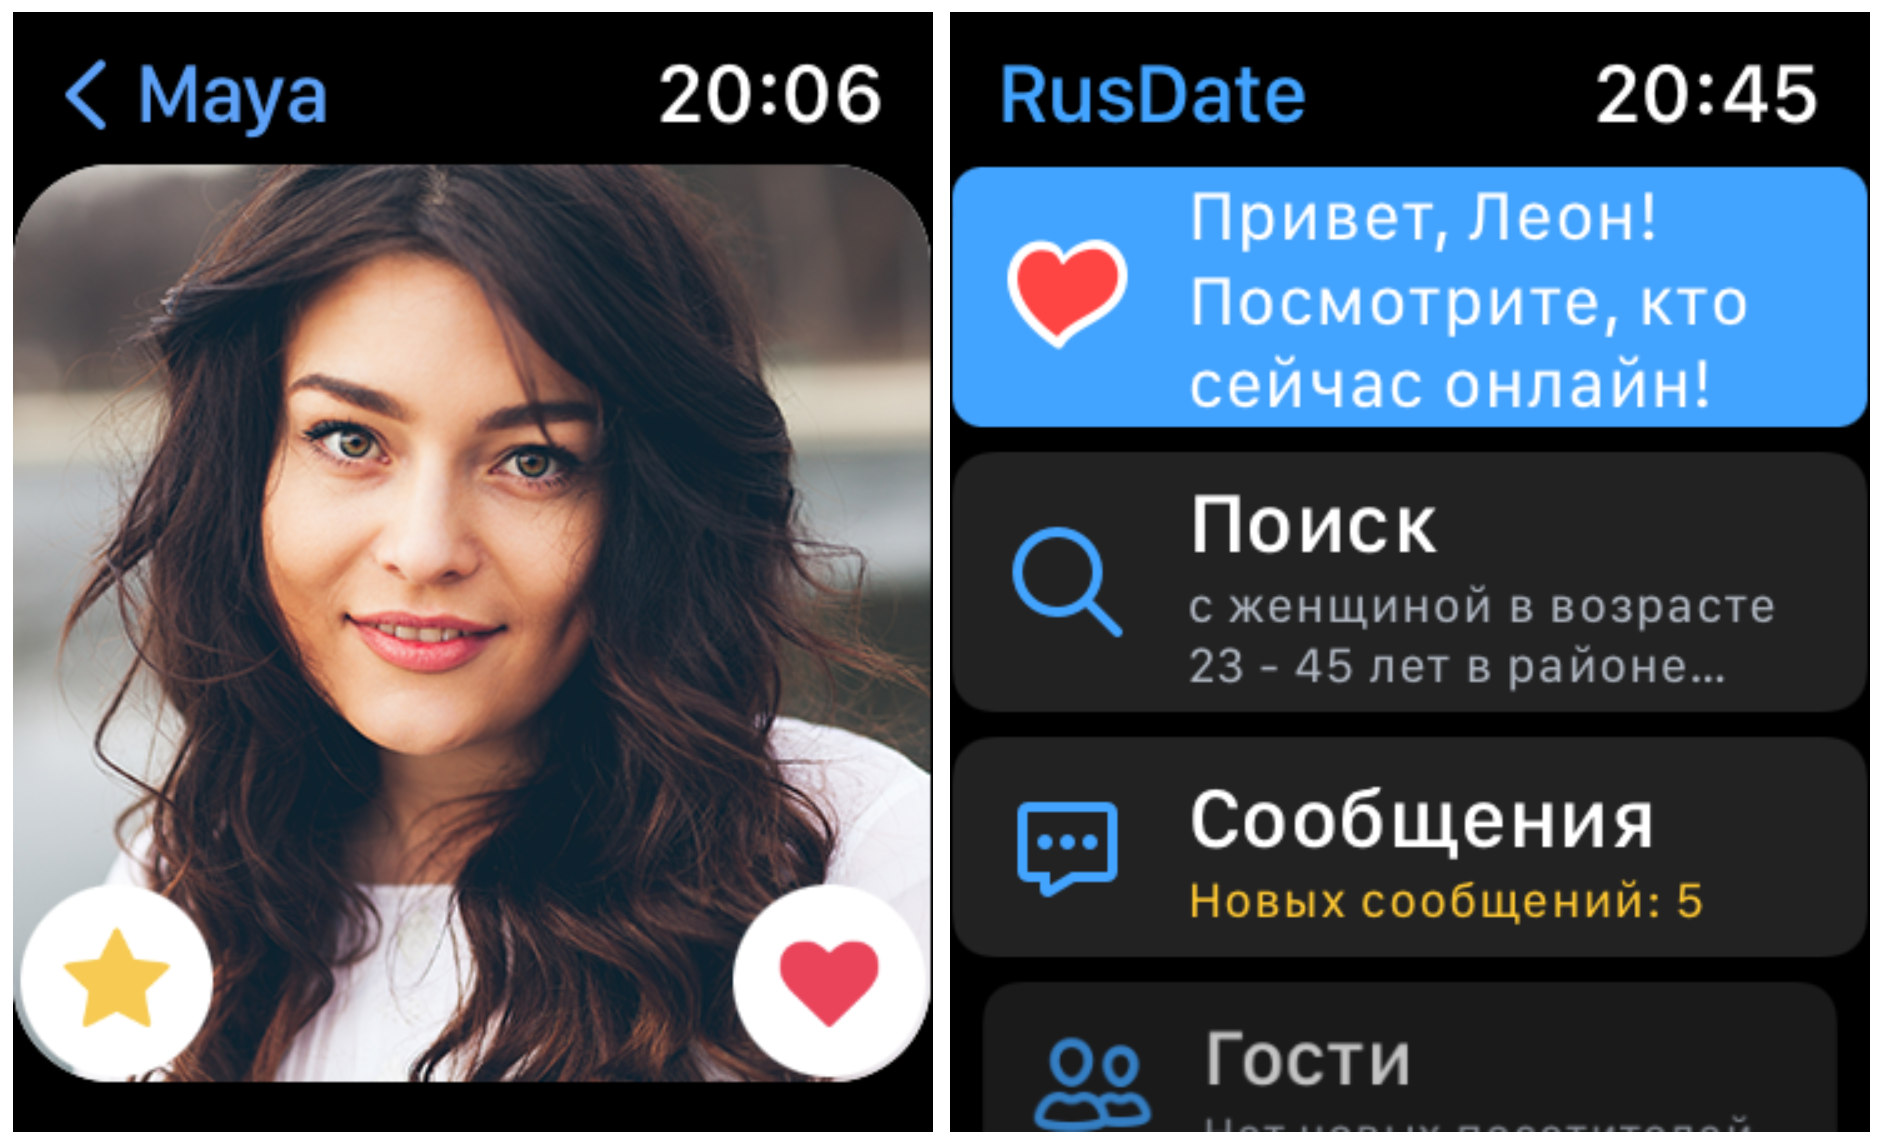 Общение на позитиве: приложение для знакомств RusDate